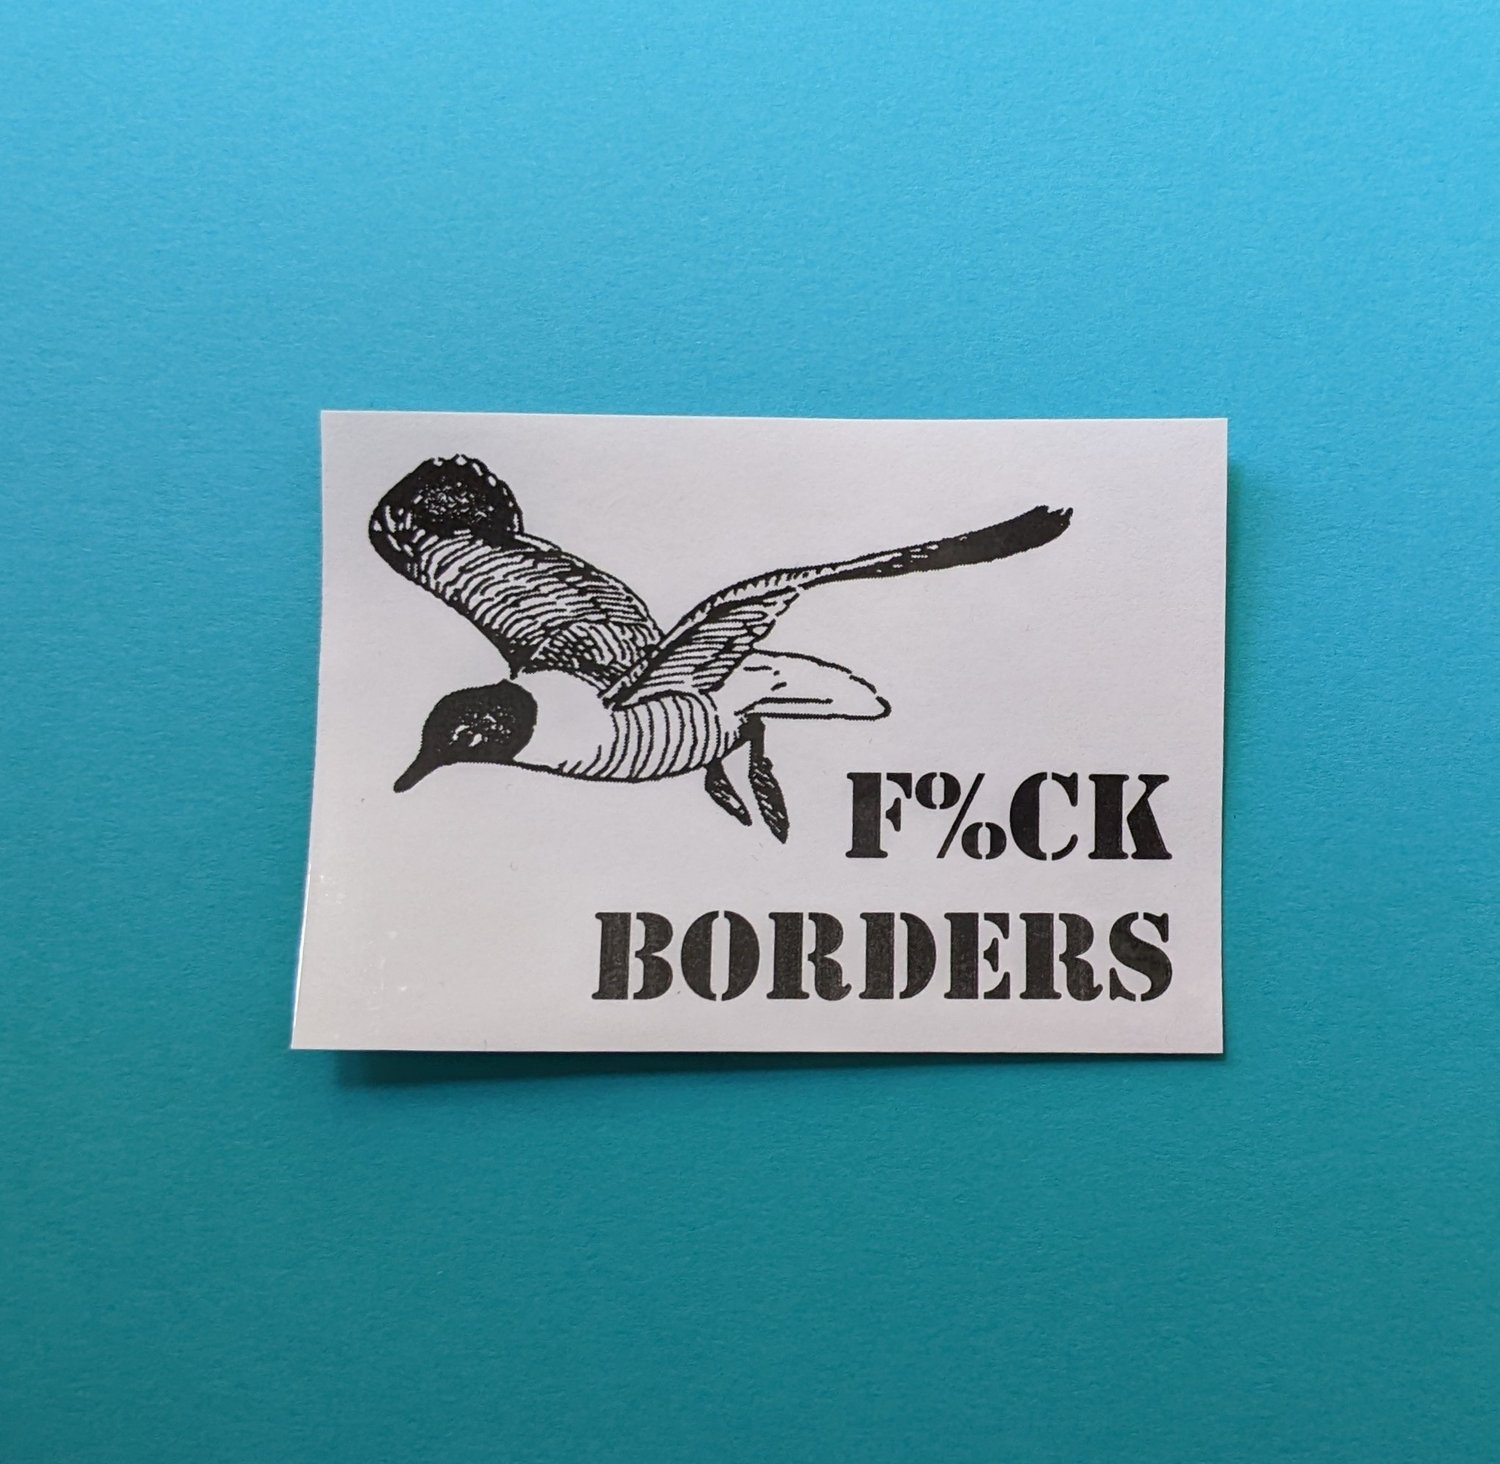 f&ck borders (sticker)